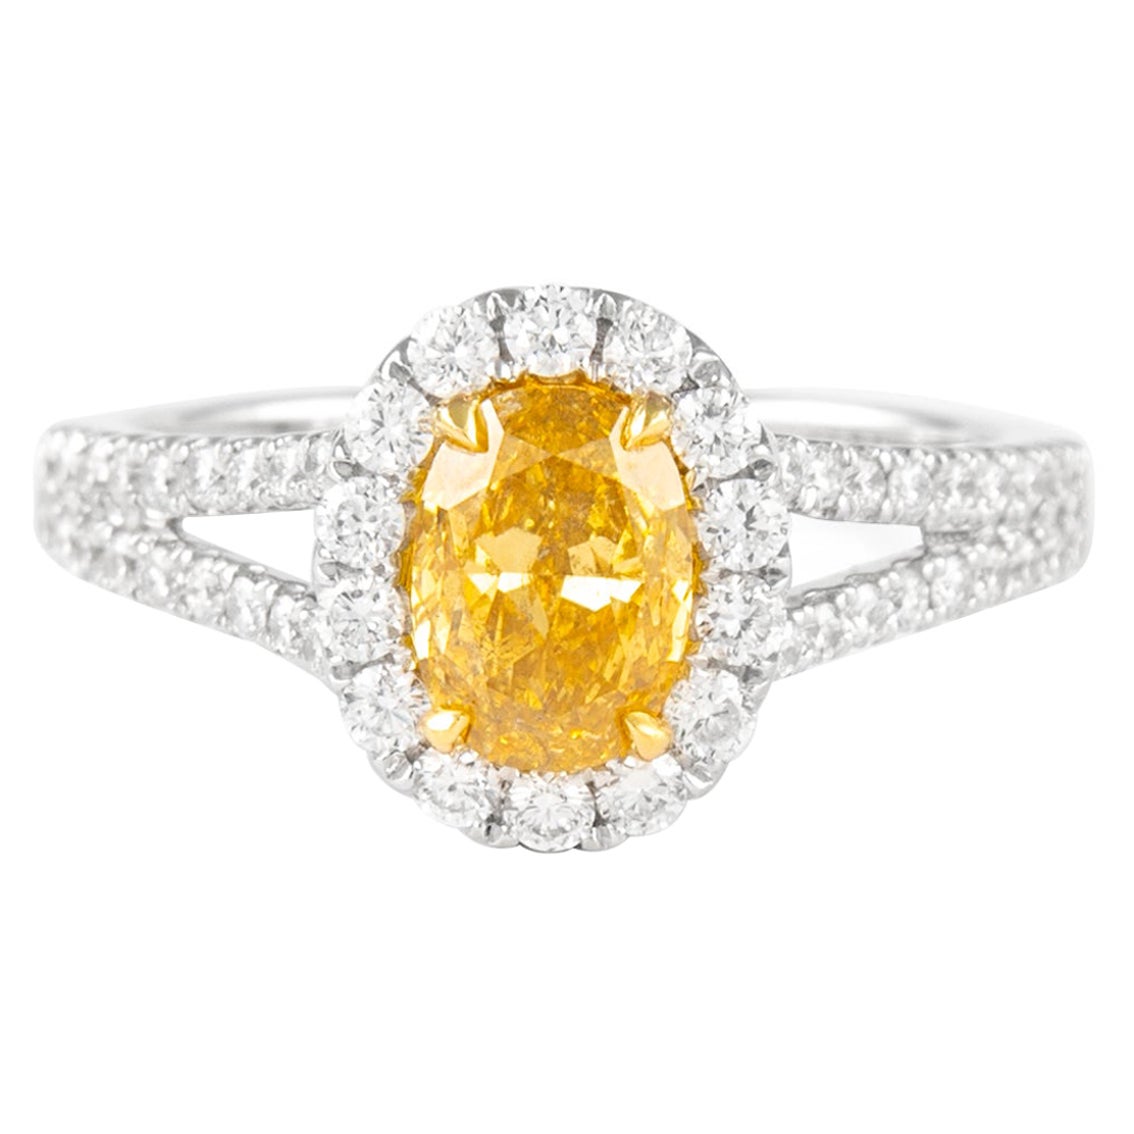 Bague Alexander GIA avec diamant jaune orangé foncé fantaisie de 1,03 carat et halo